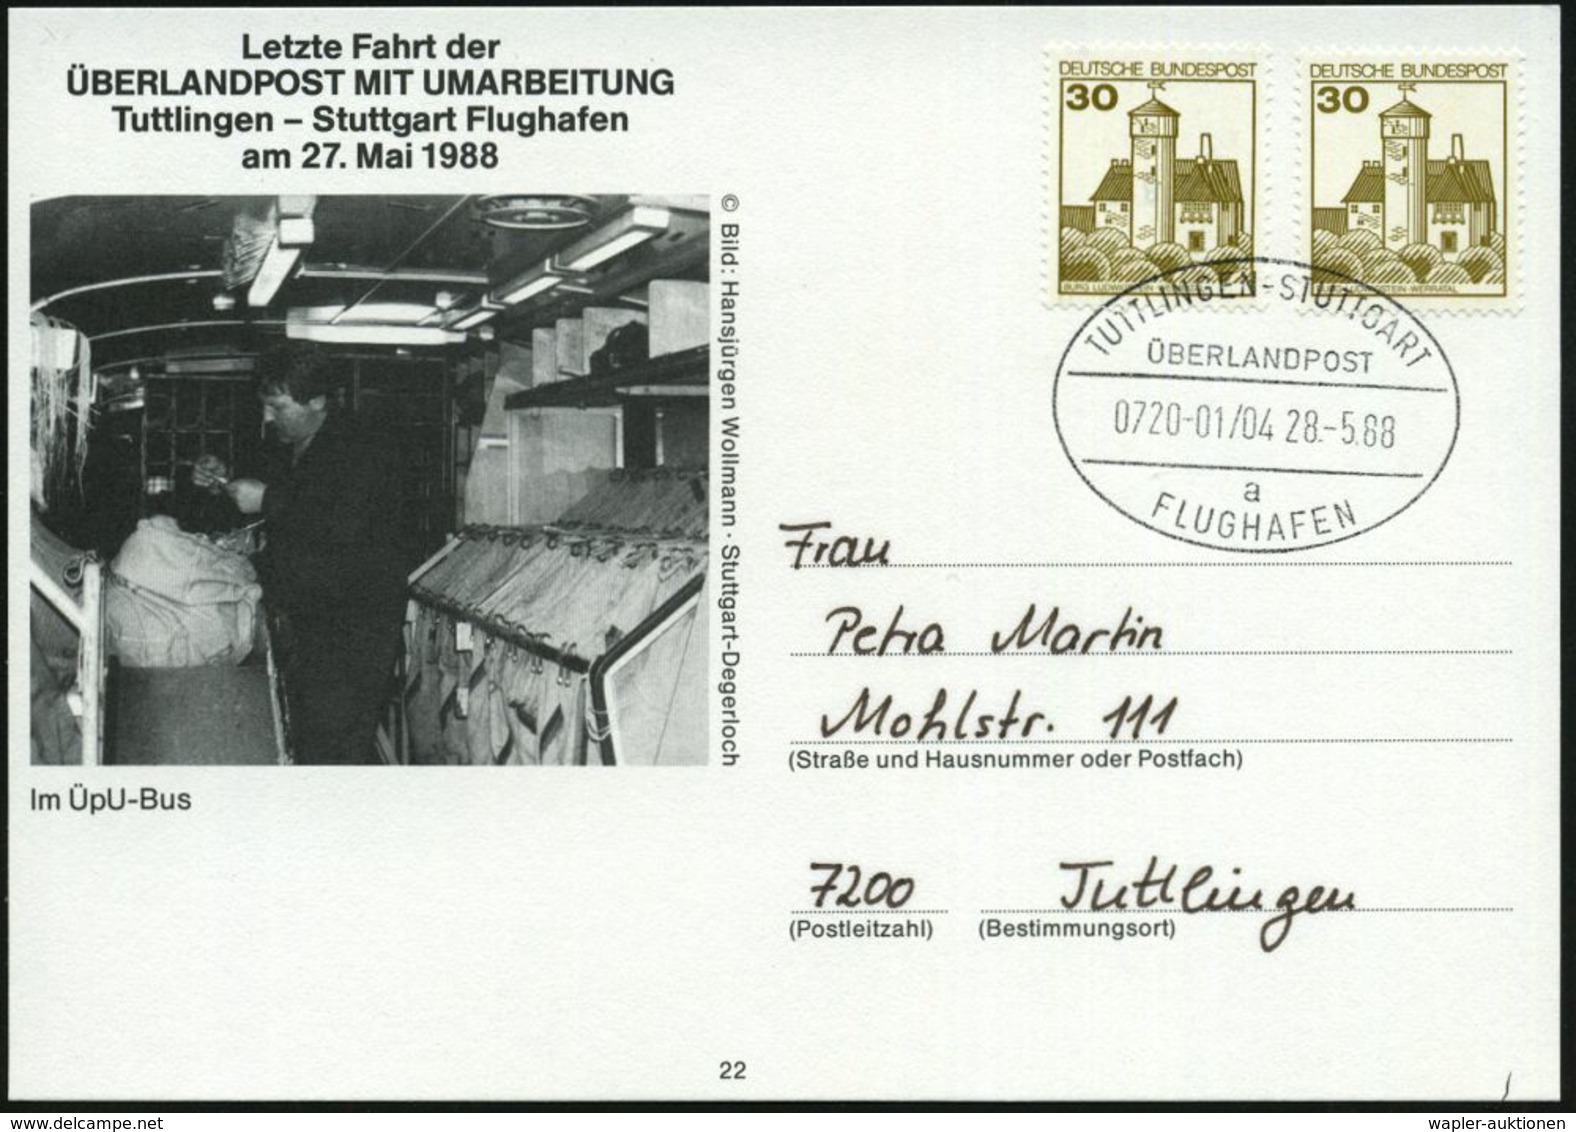 TUTTLINGEN-STUTTGART/ ÜBERLANDPOST/ 0720-01/ 04/ A/ FLUGHAFEN 1988 (28.5.) Oval-Stempel Auf Sonder-Kt.: Letzte Fahrt (Po - Automobili